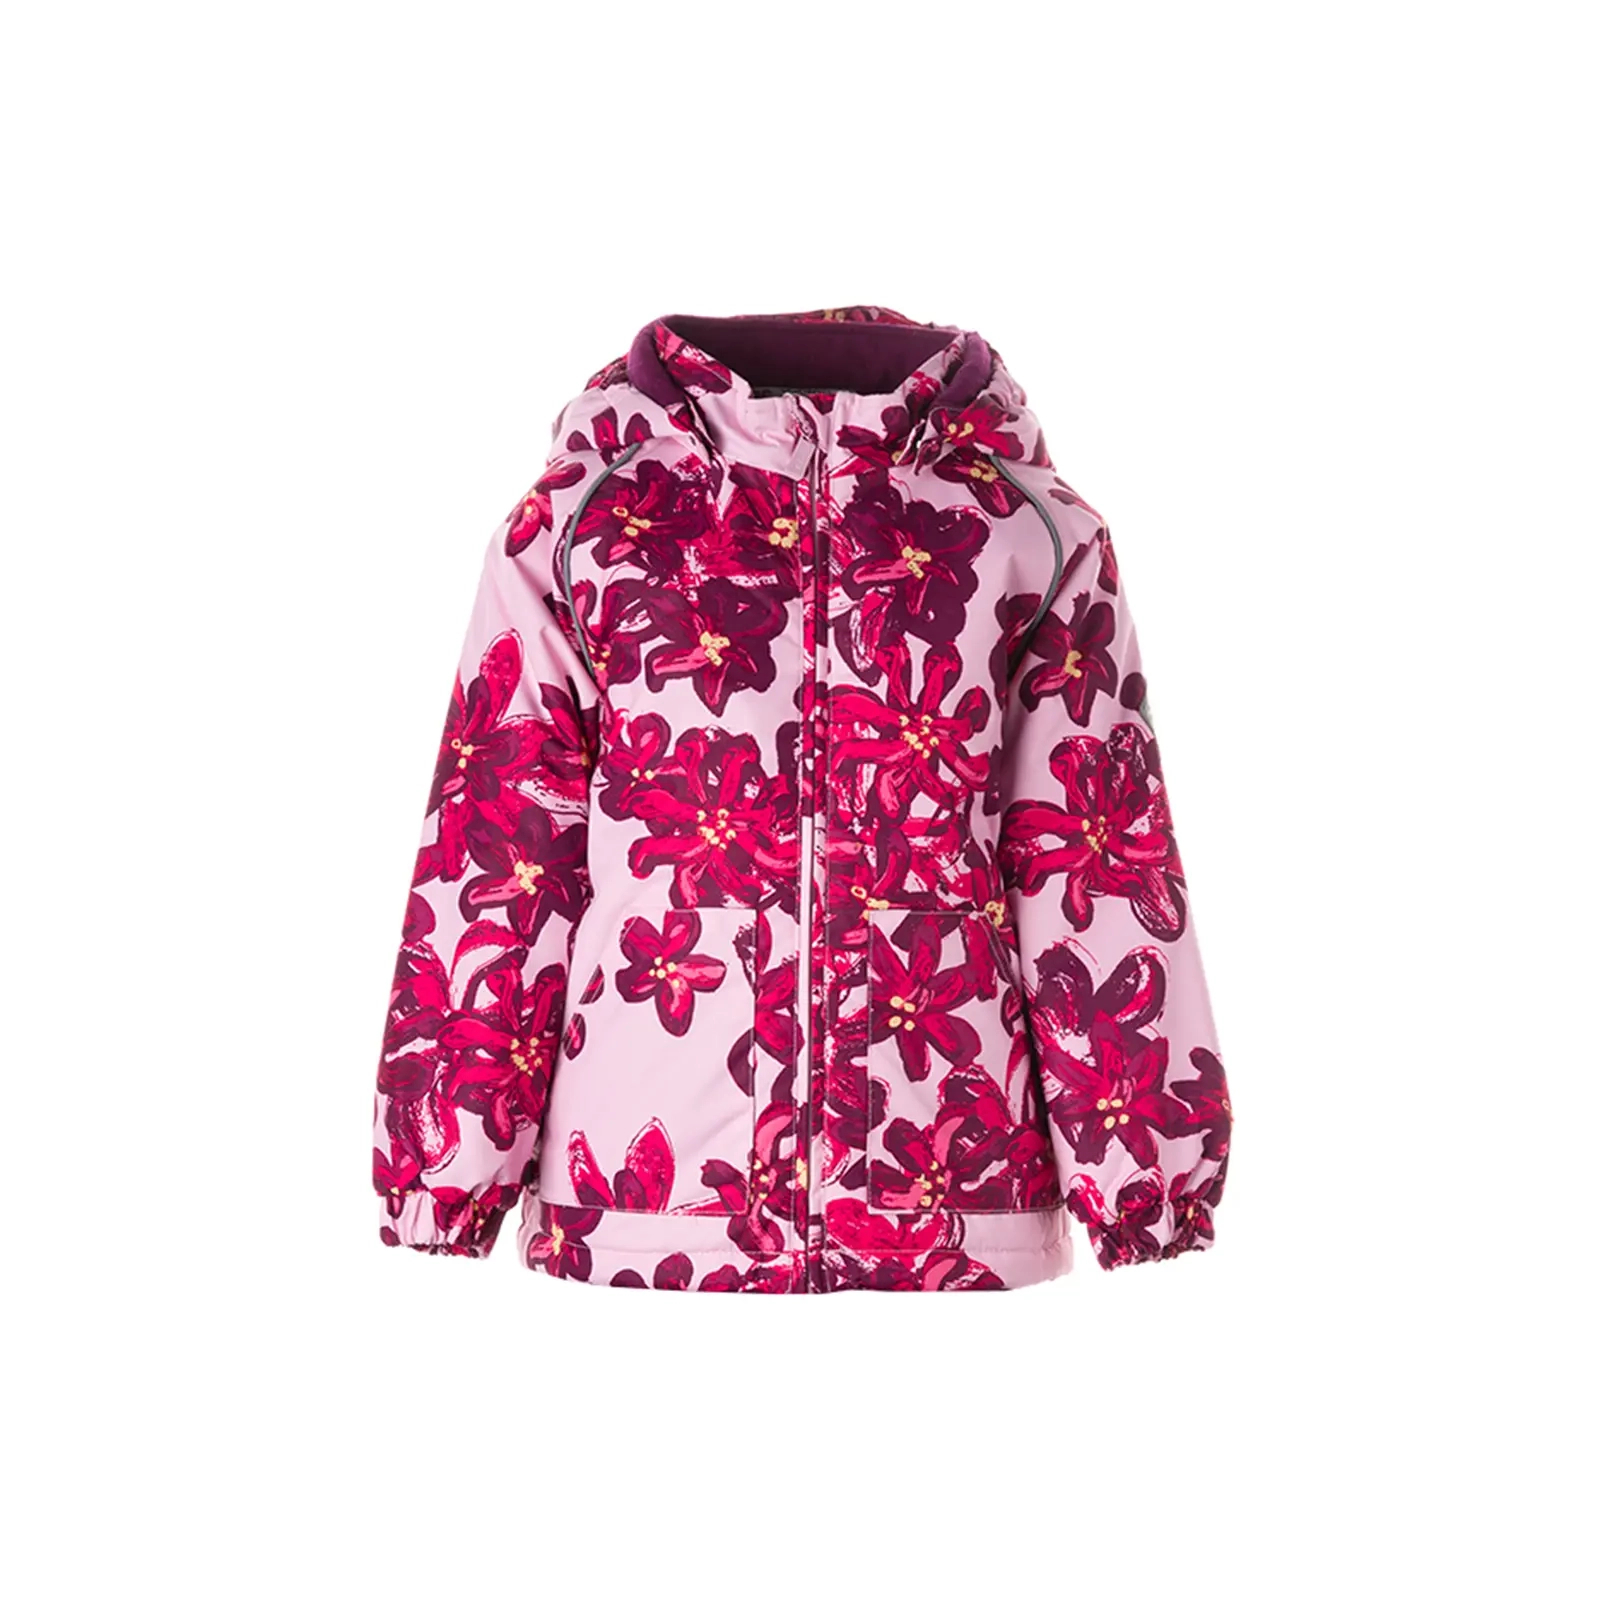 Куртка Huppa VIRGO 1 17210114 розовый с принтом 86 (4741632023826)